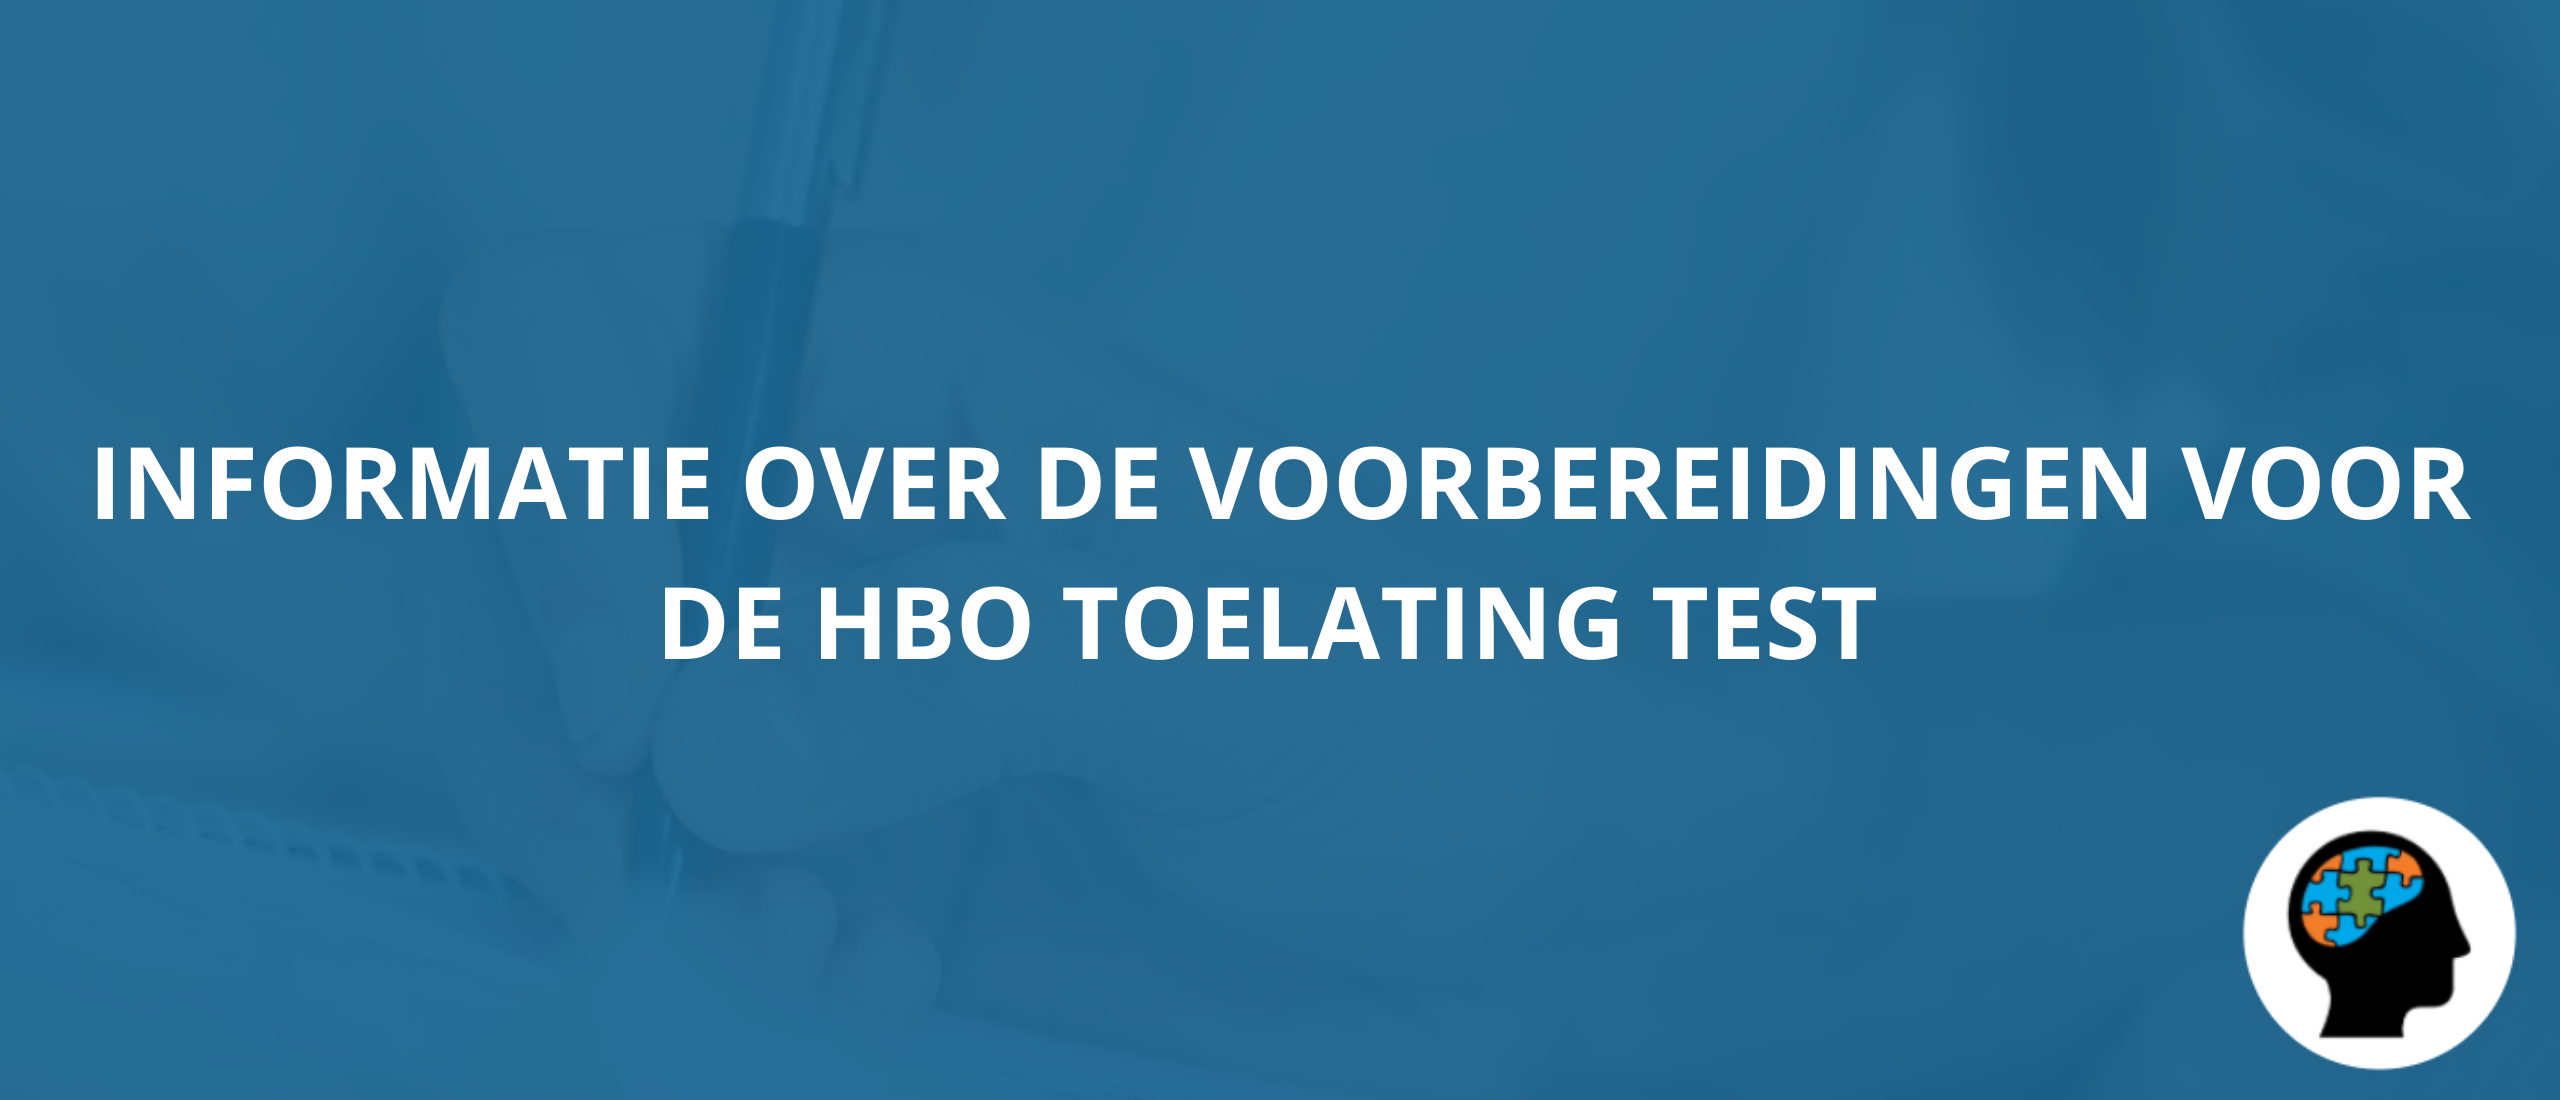 Informatie over de voorbereidingen voor de HBO toelating test